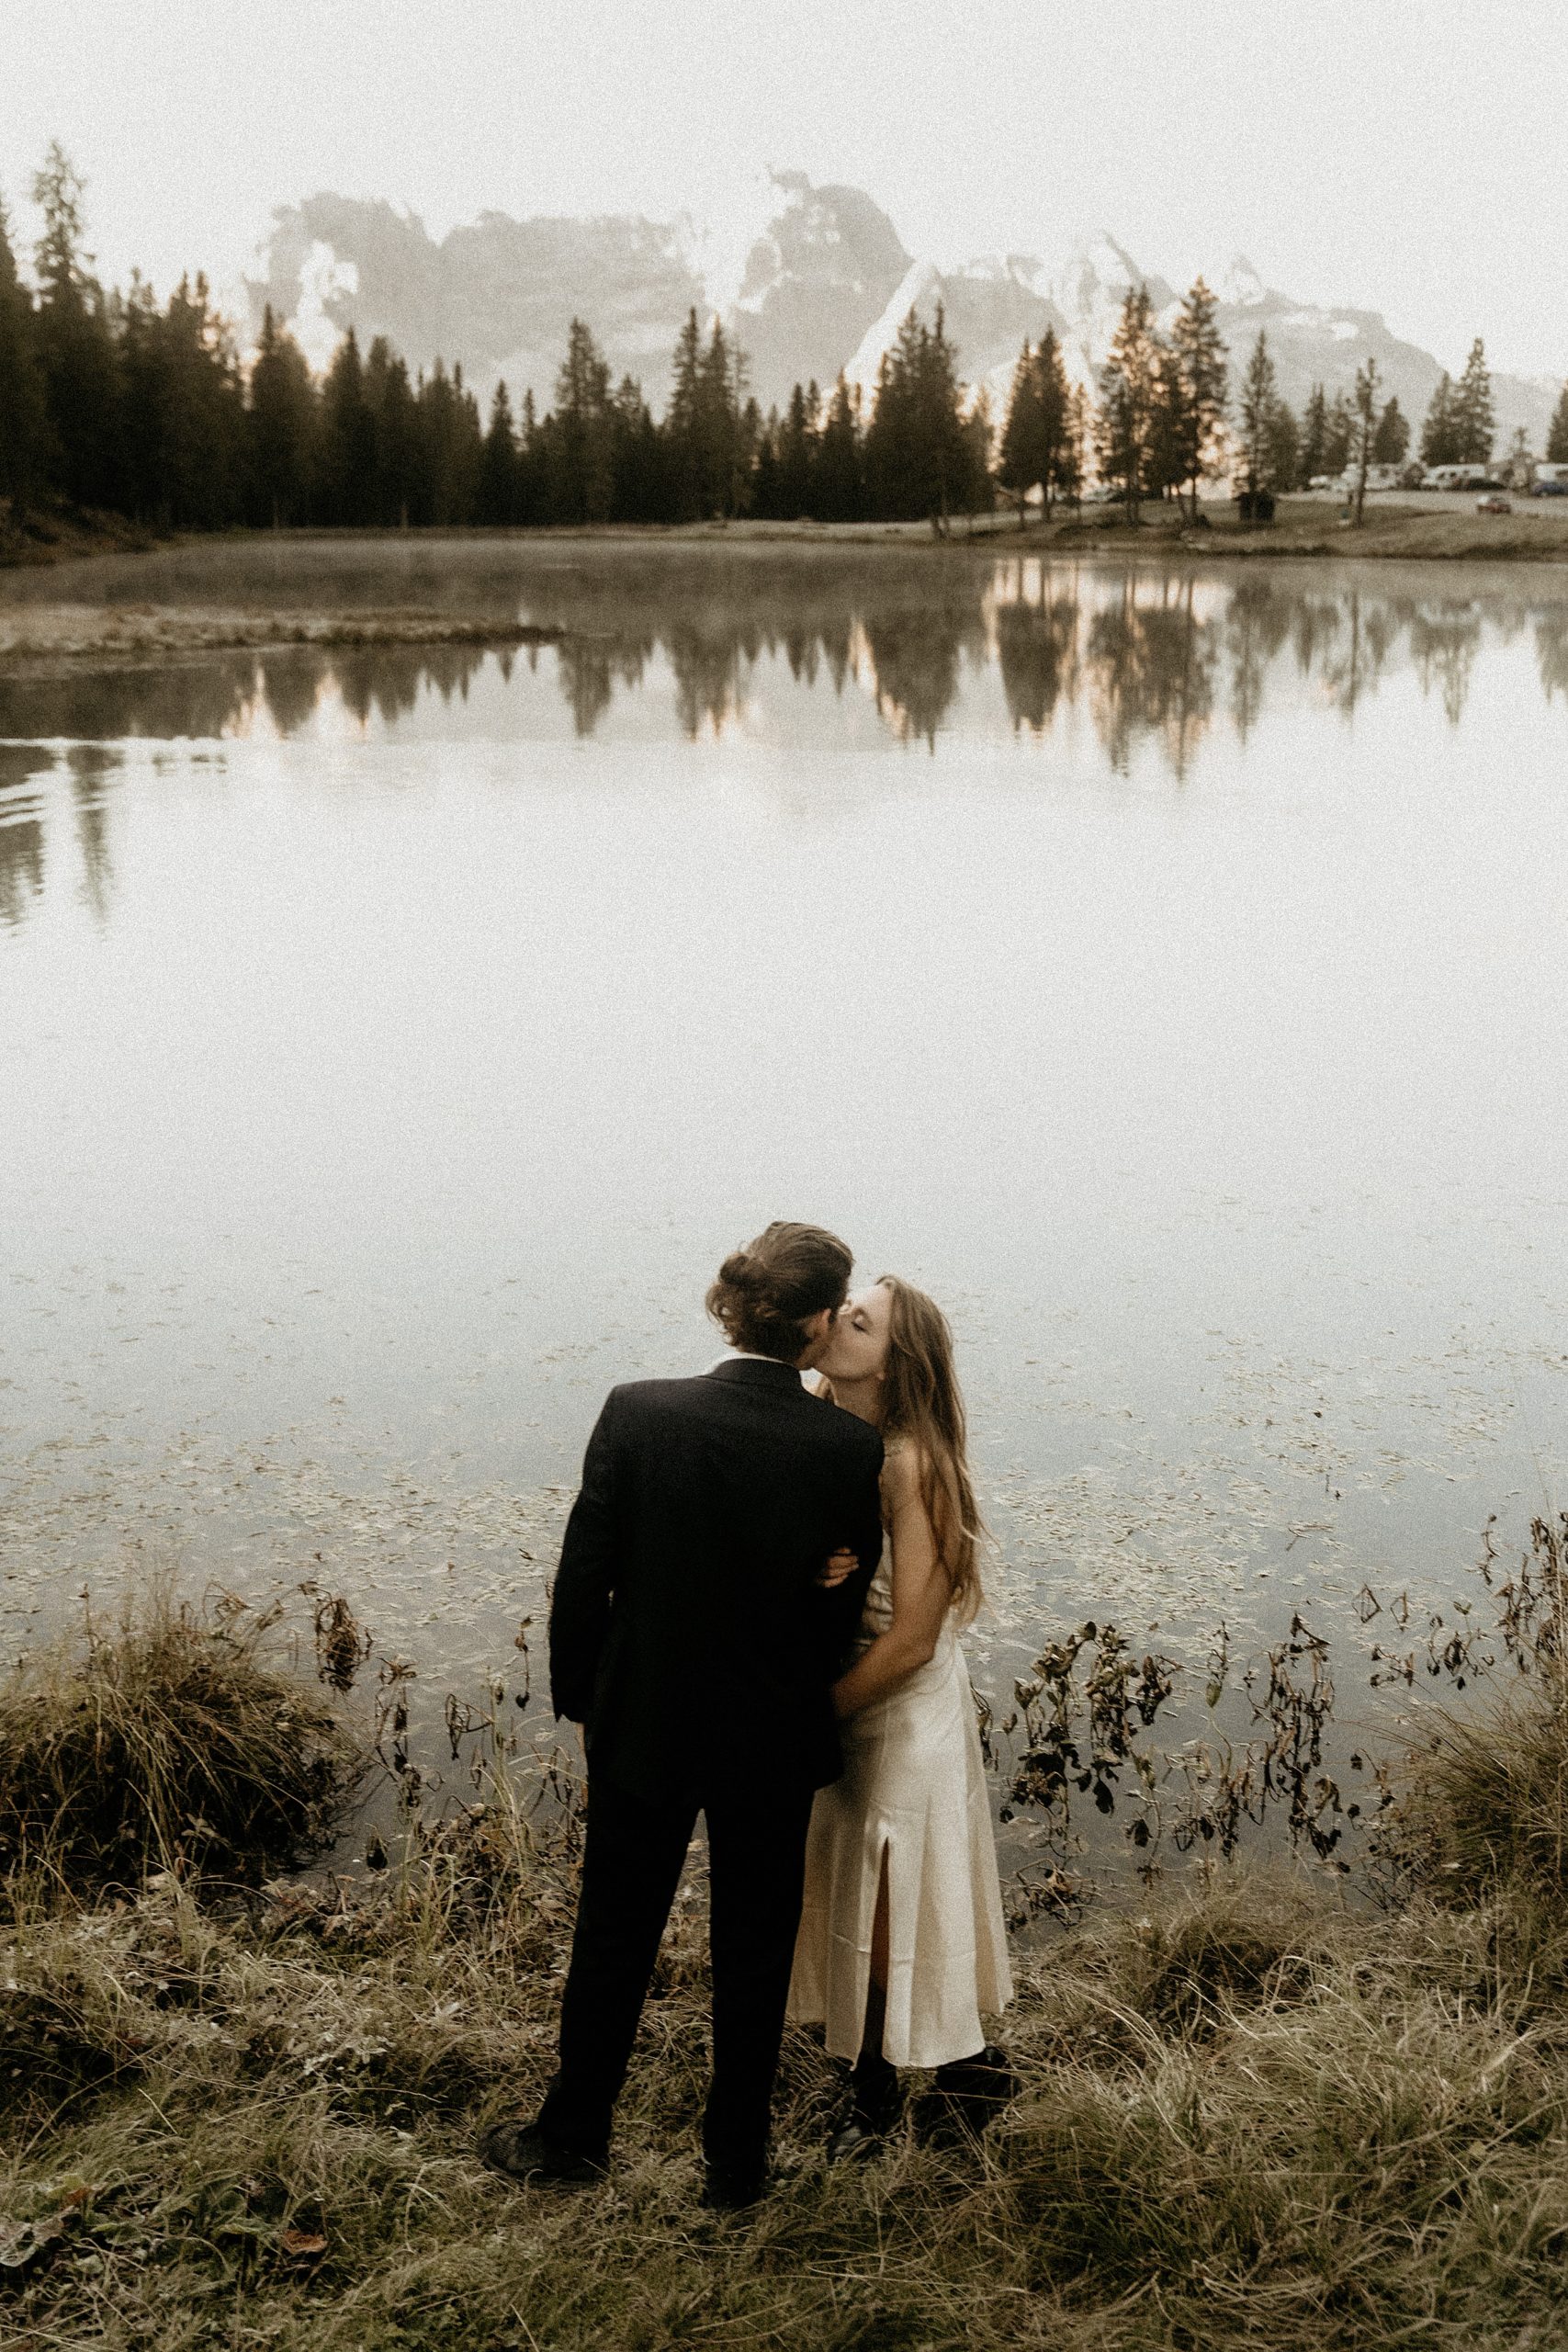 bride and groom kissing dolomites landscape

